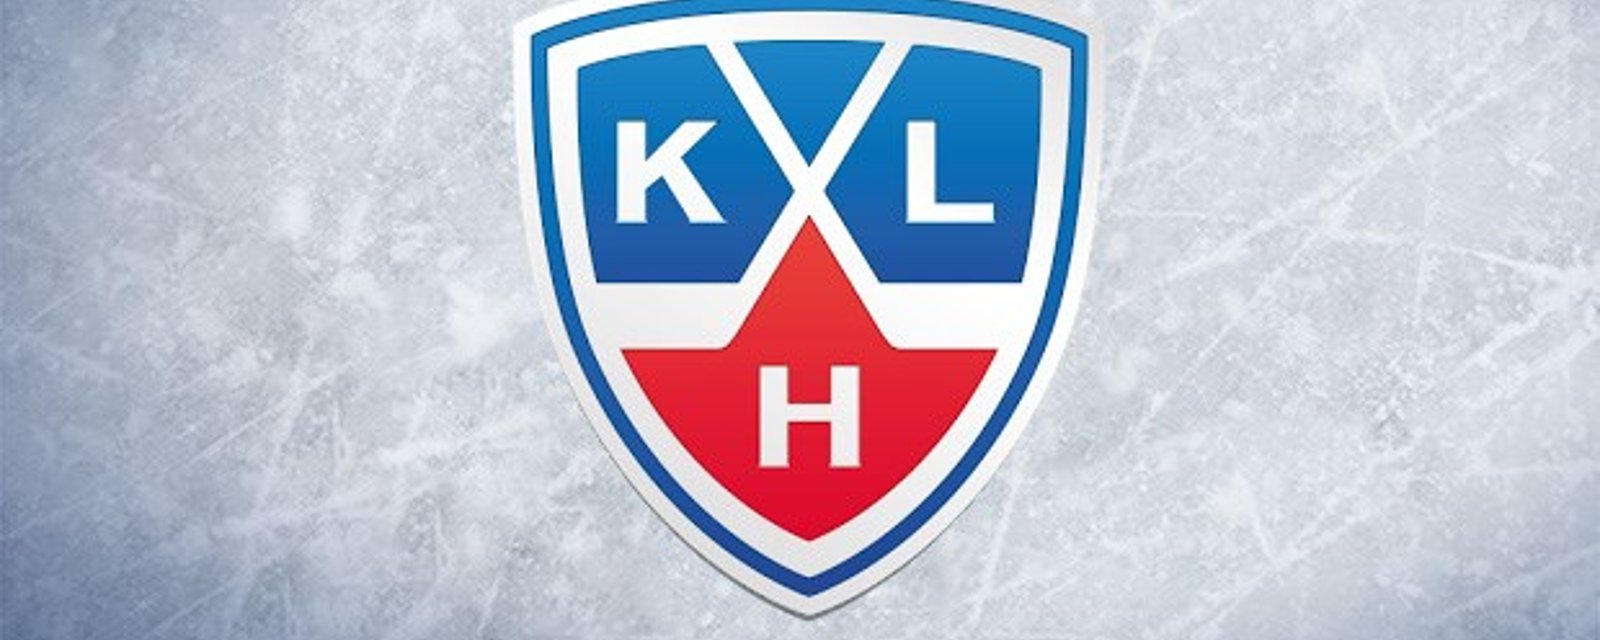 La KHL, une menace pour la LNH?